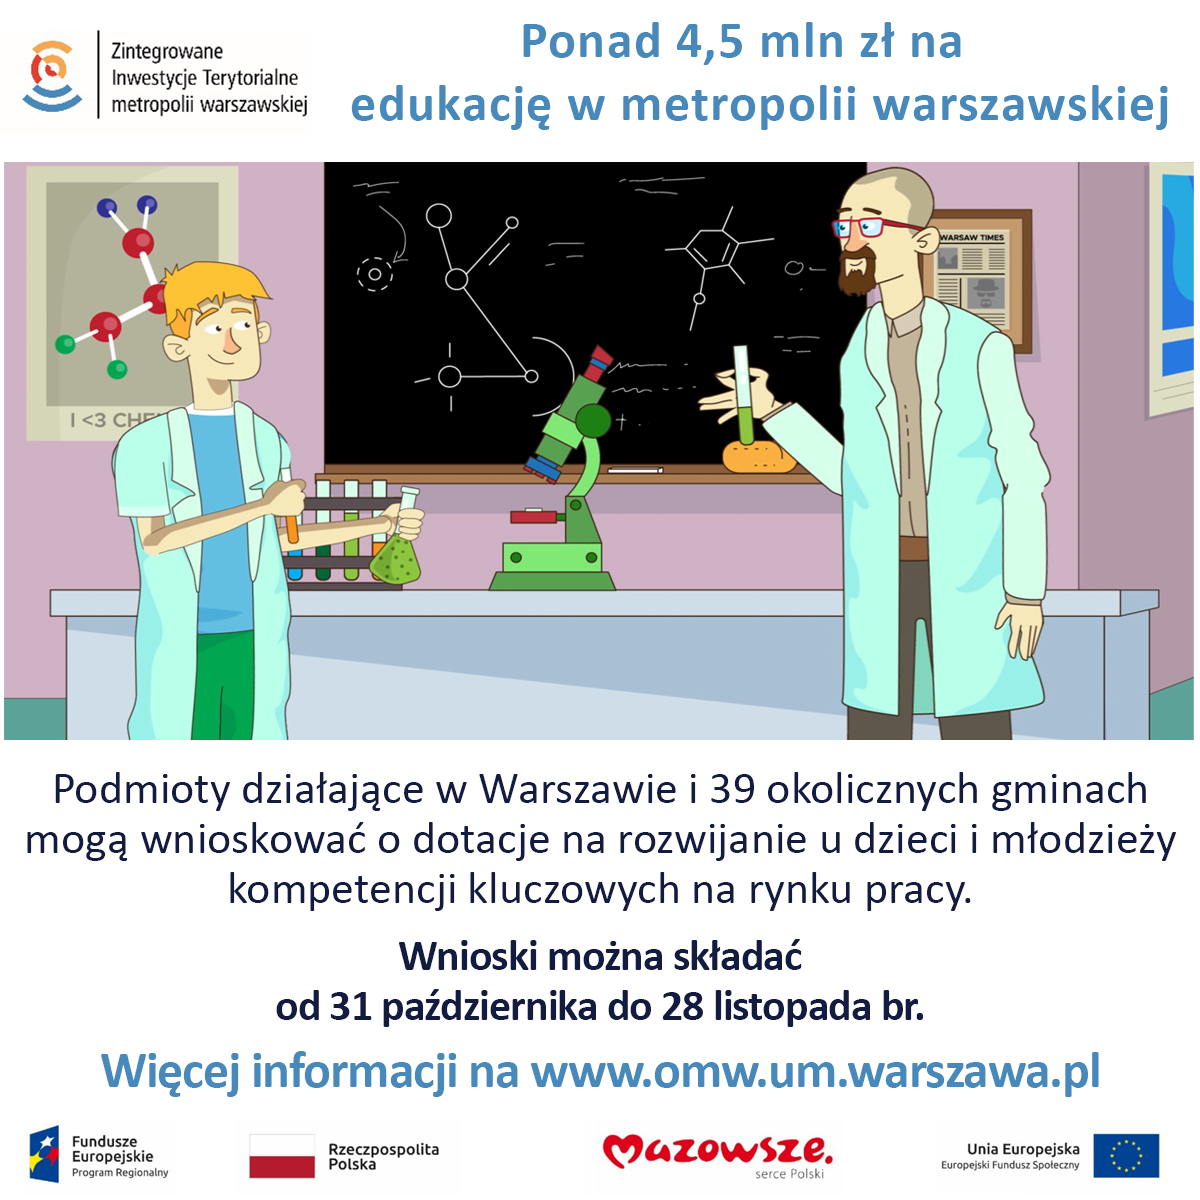 Plakat informujący o 4,5 mln zł dotacji unijnych na projekty edukacyjne w metropolii warszawskiej